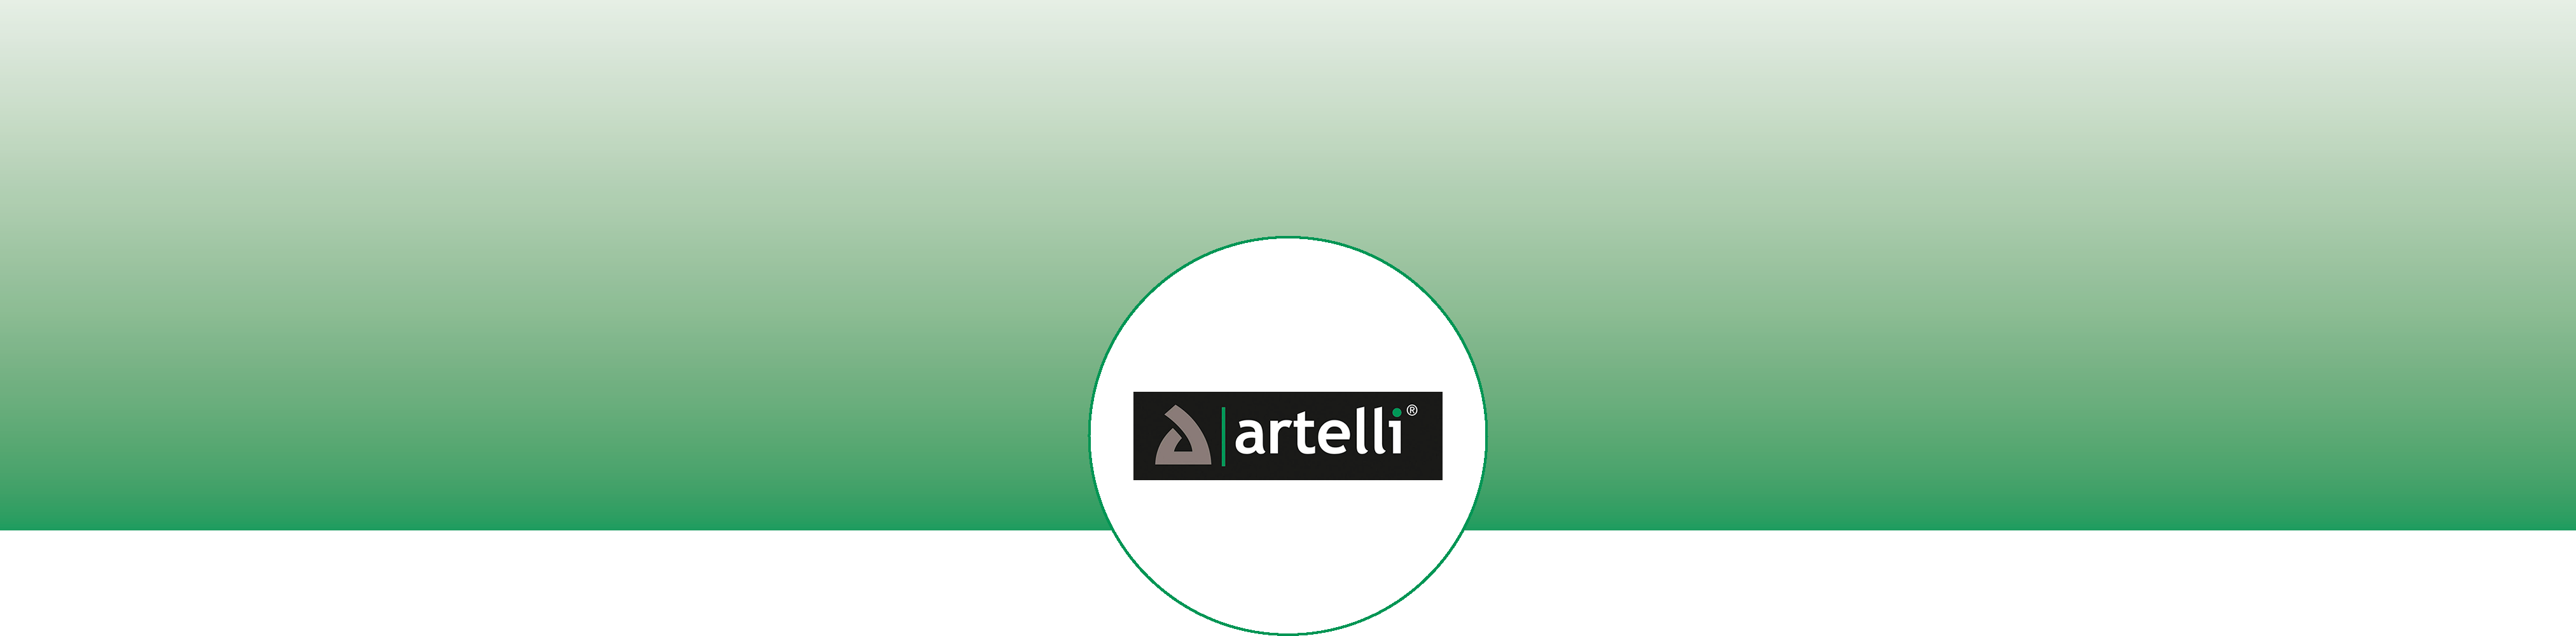 banner_artelli